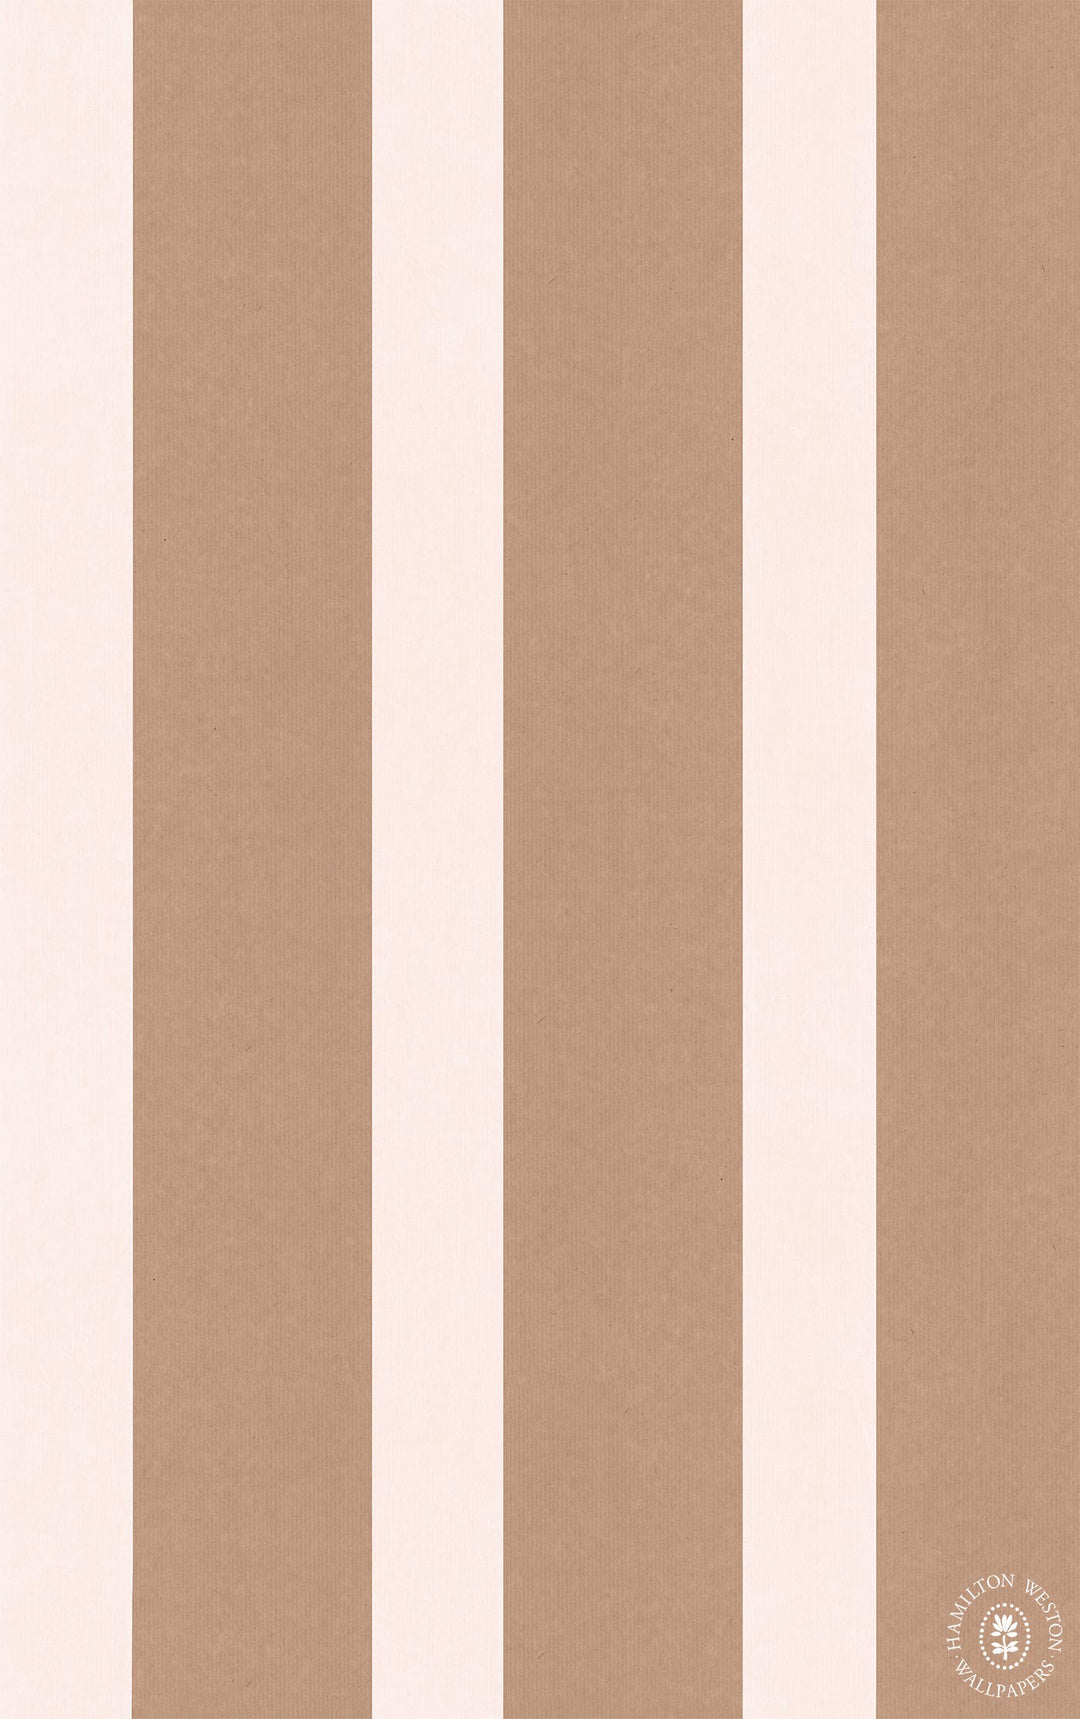 Hamilton-weston-wallpaper-adam-bray-brown-paper-stripe-collection-brown-off-white-ABBPS06-stripe-wallpaper-british-collaboration